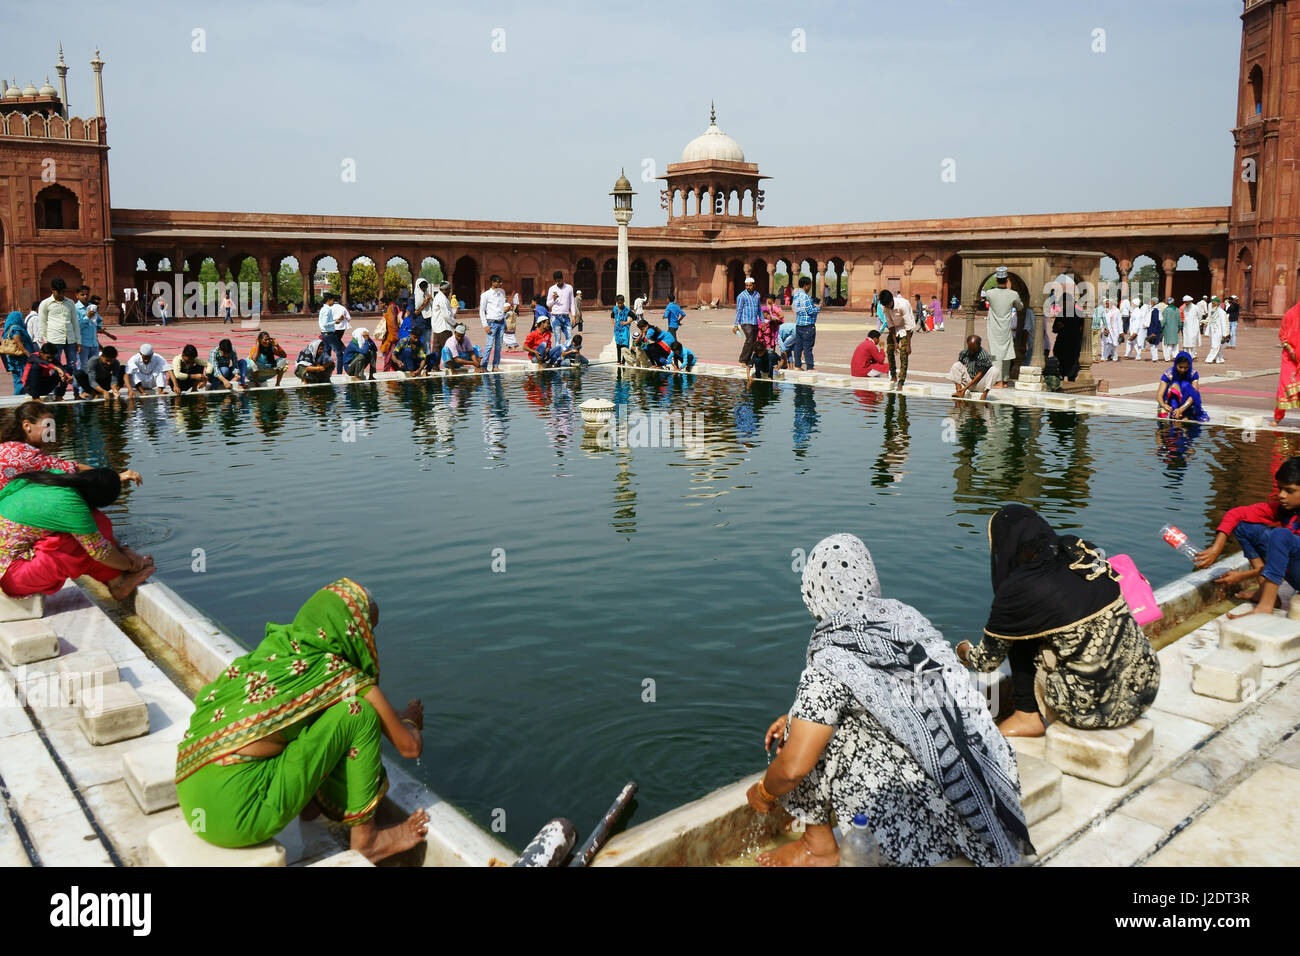 Muslimische Frauen und Männer nach dem Freitagsgebet waschen im Becken in Jama Masjid Moschee, Alt-Delhi, Indien Stockfoto